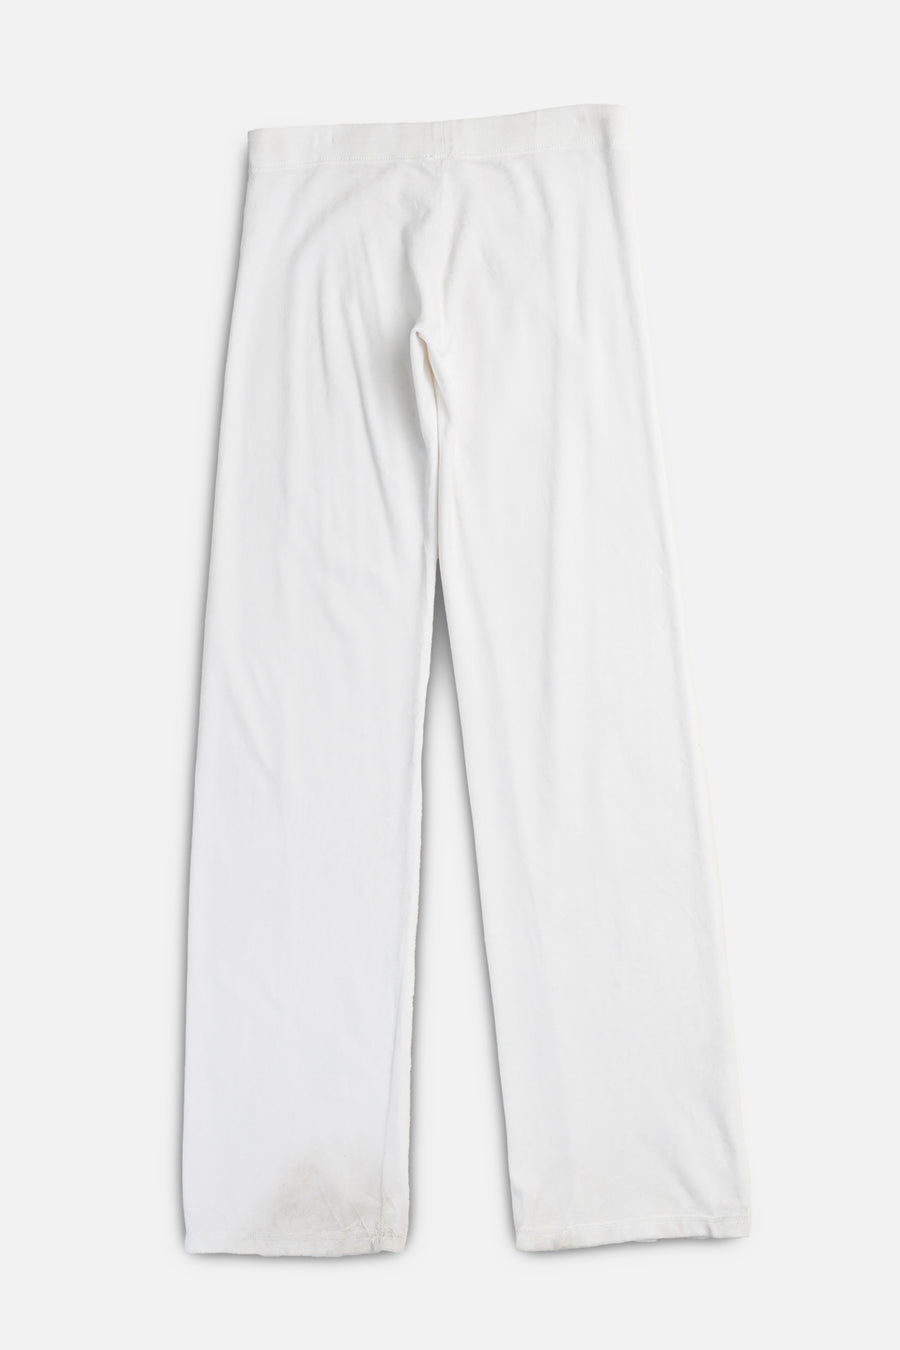 Vintage Juicy Couture Velour Pants - M